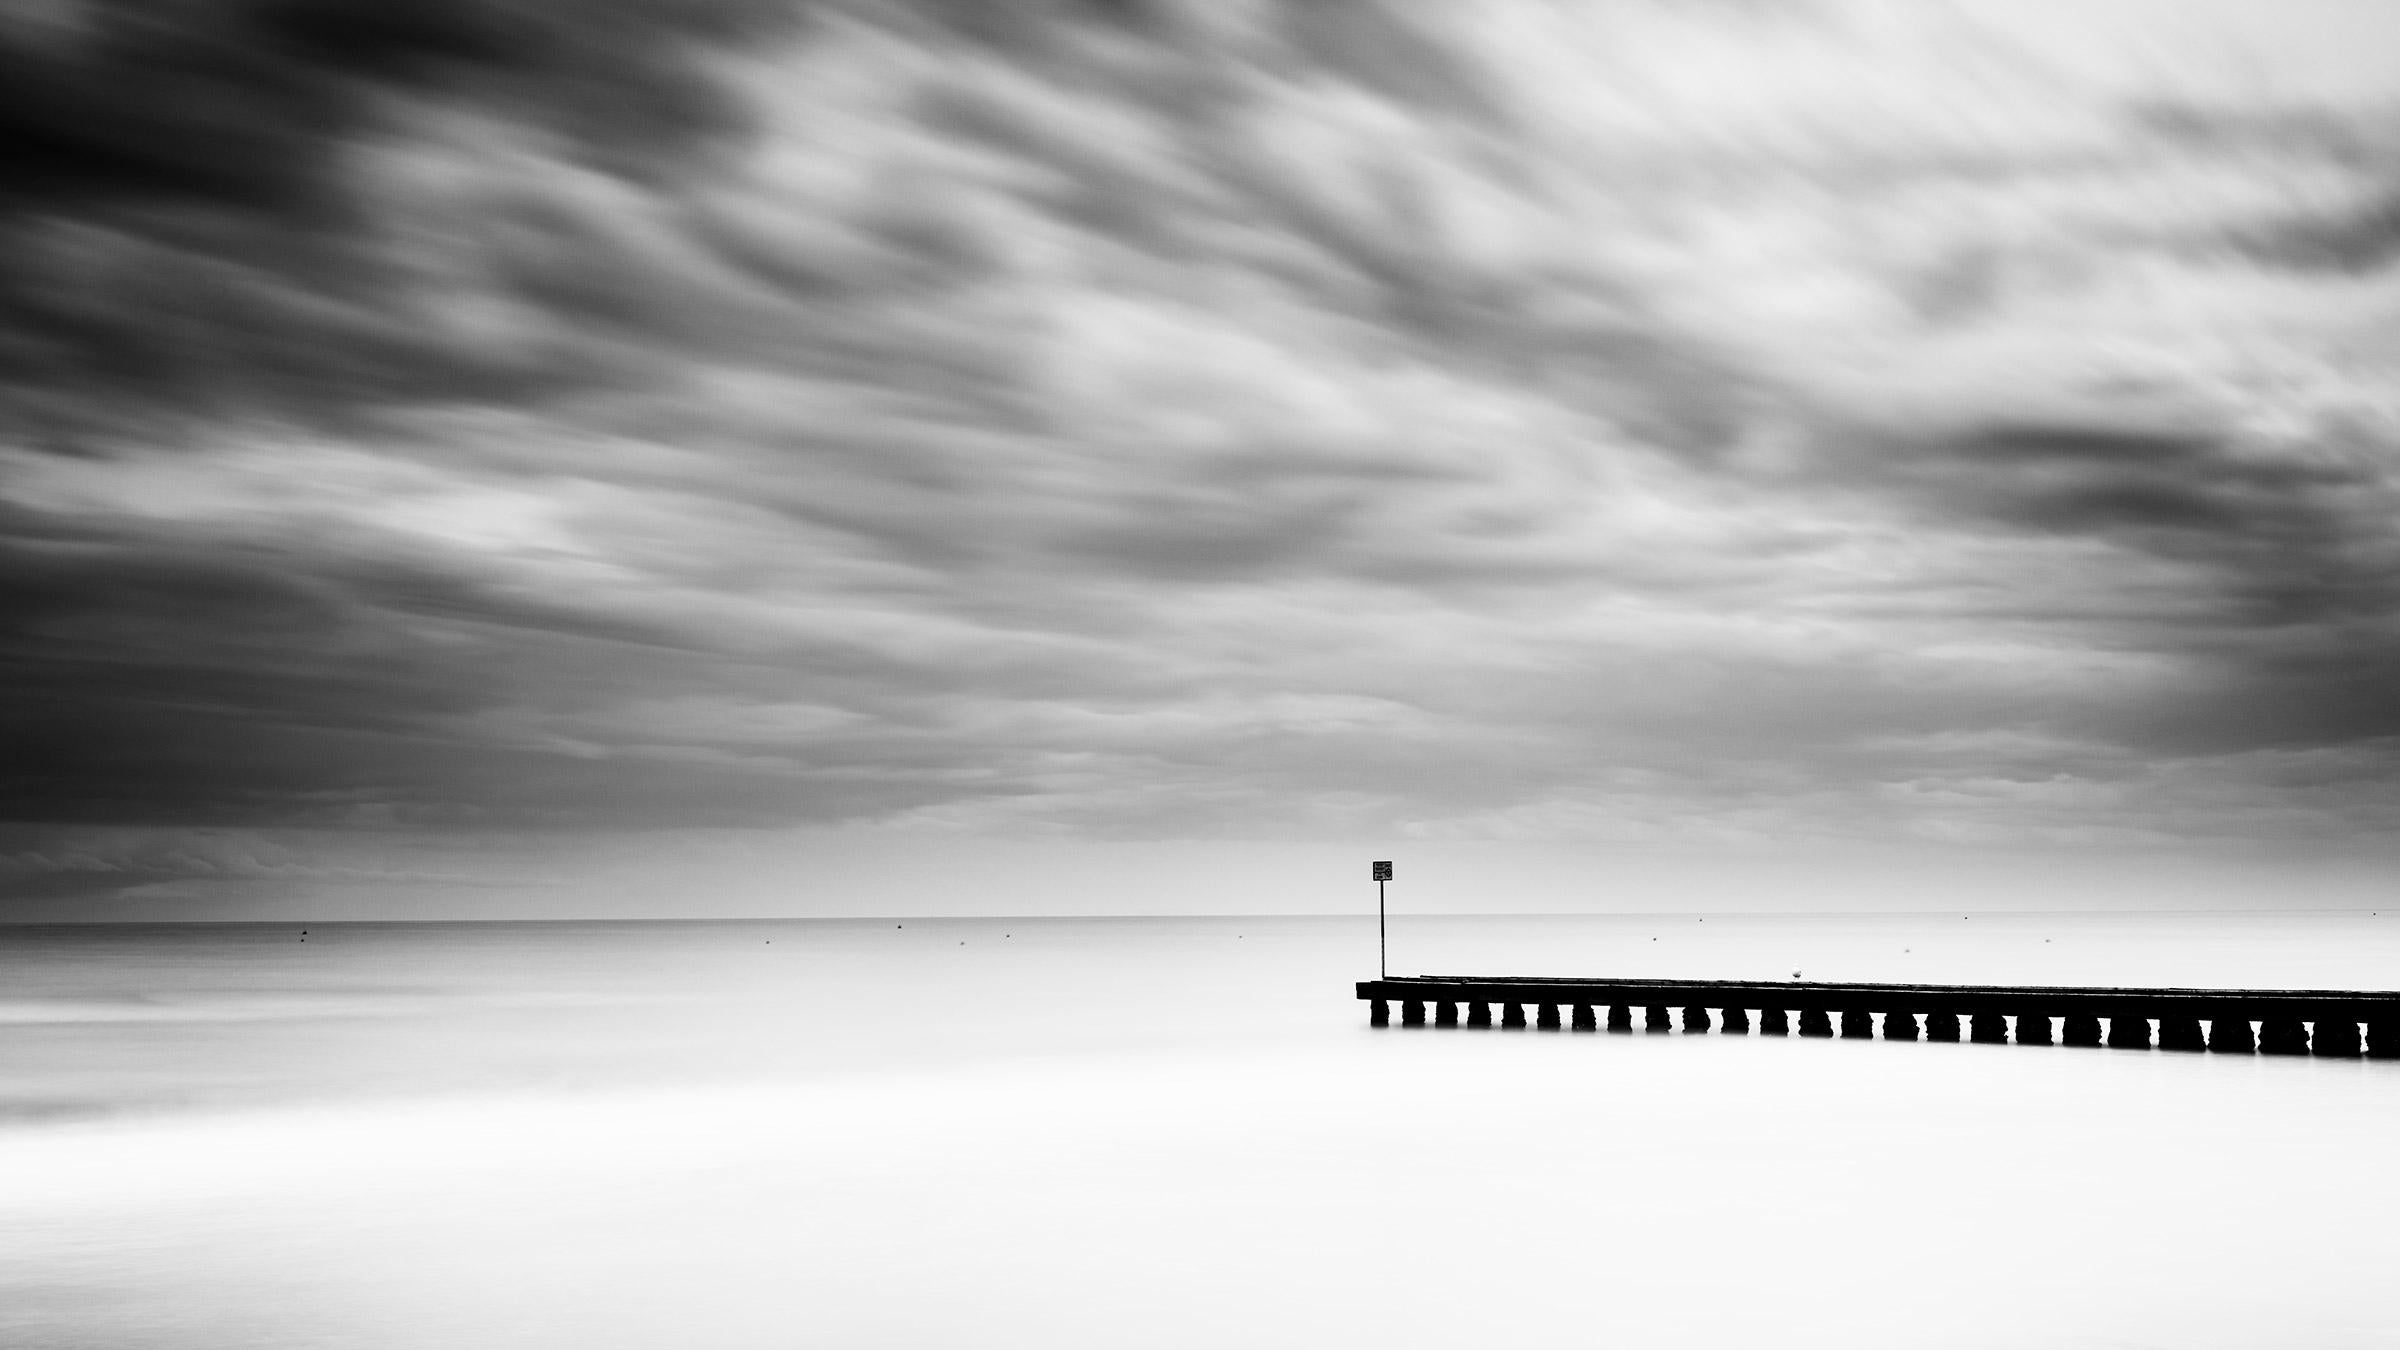 Holzpfeiler im Meer, Panorama, stürmisches Wetter, schwarz-weiße Landschaft